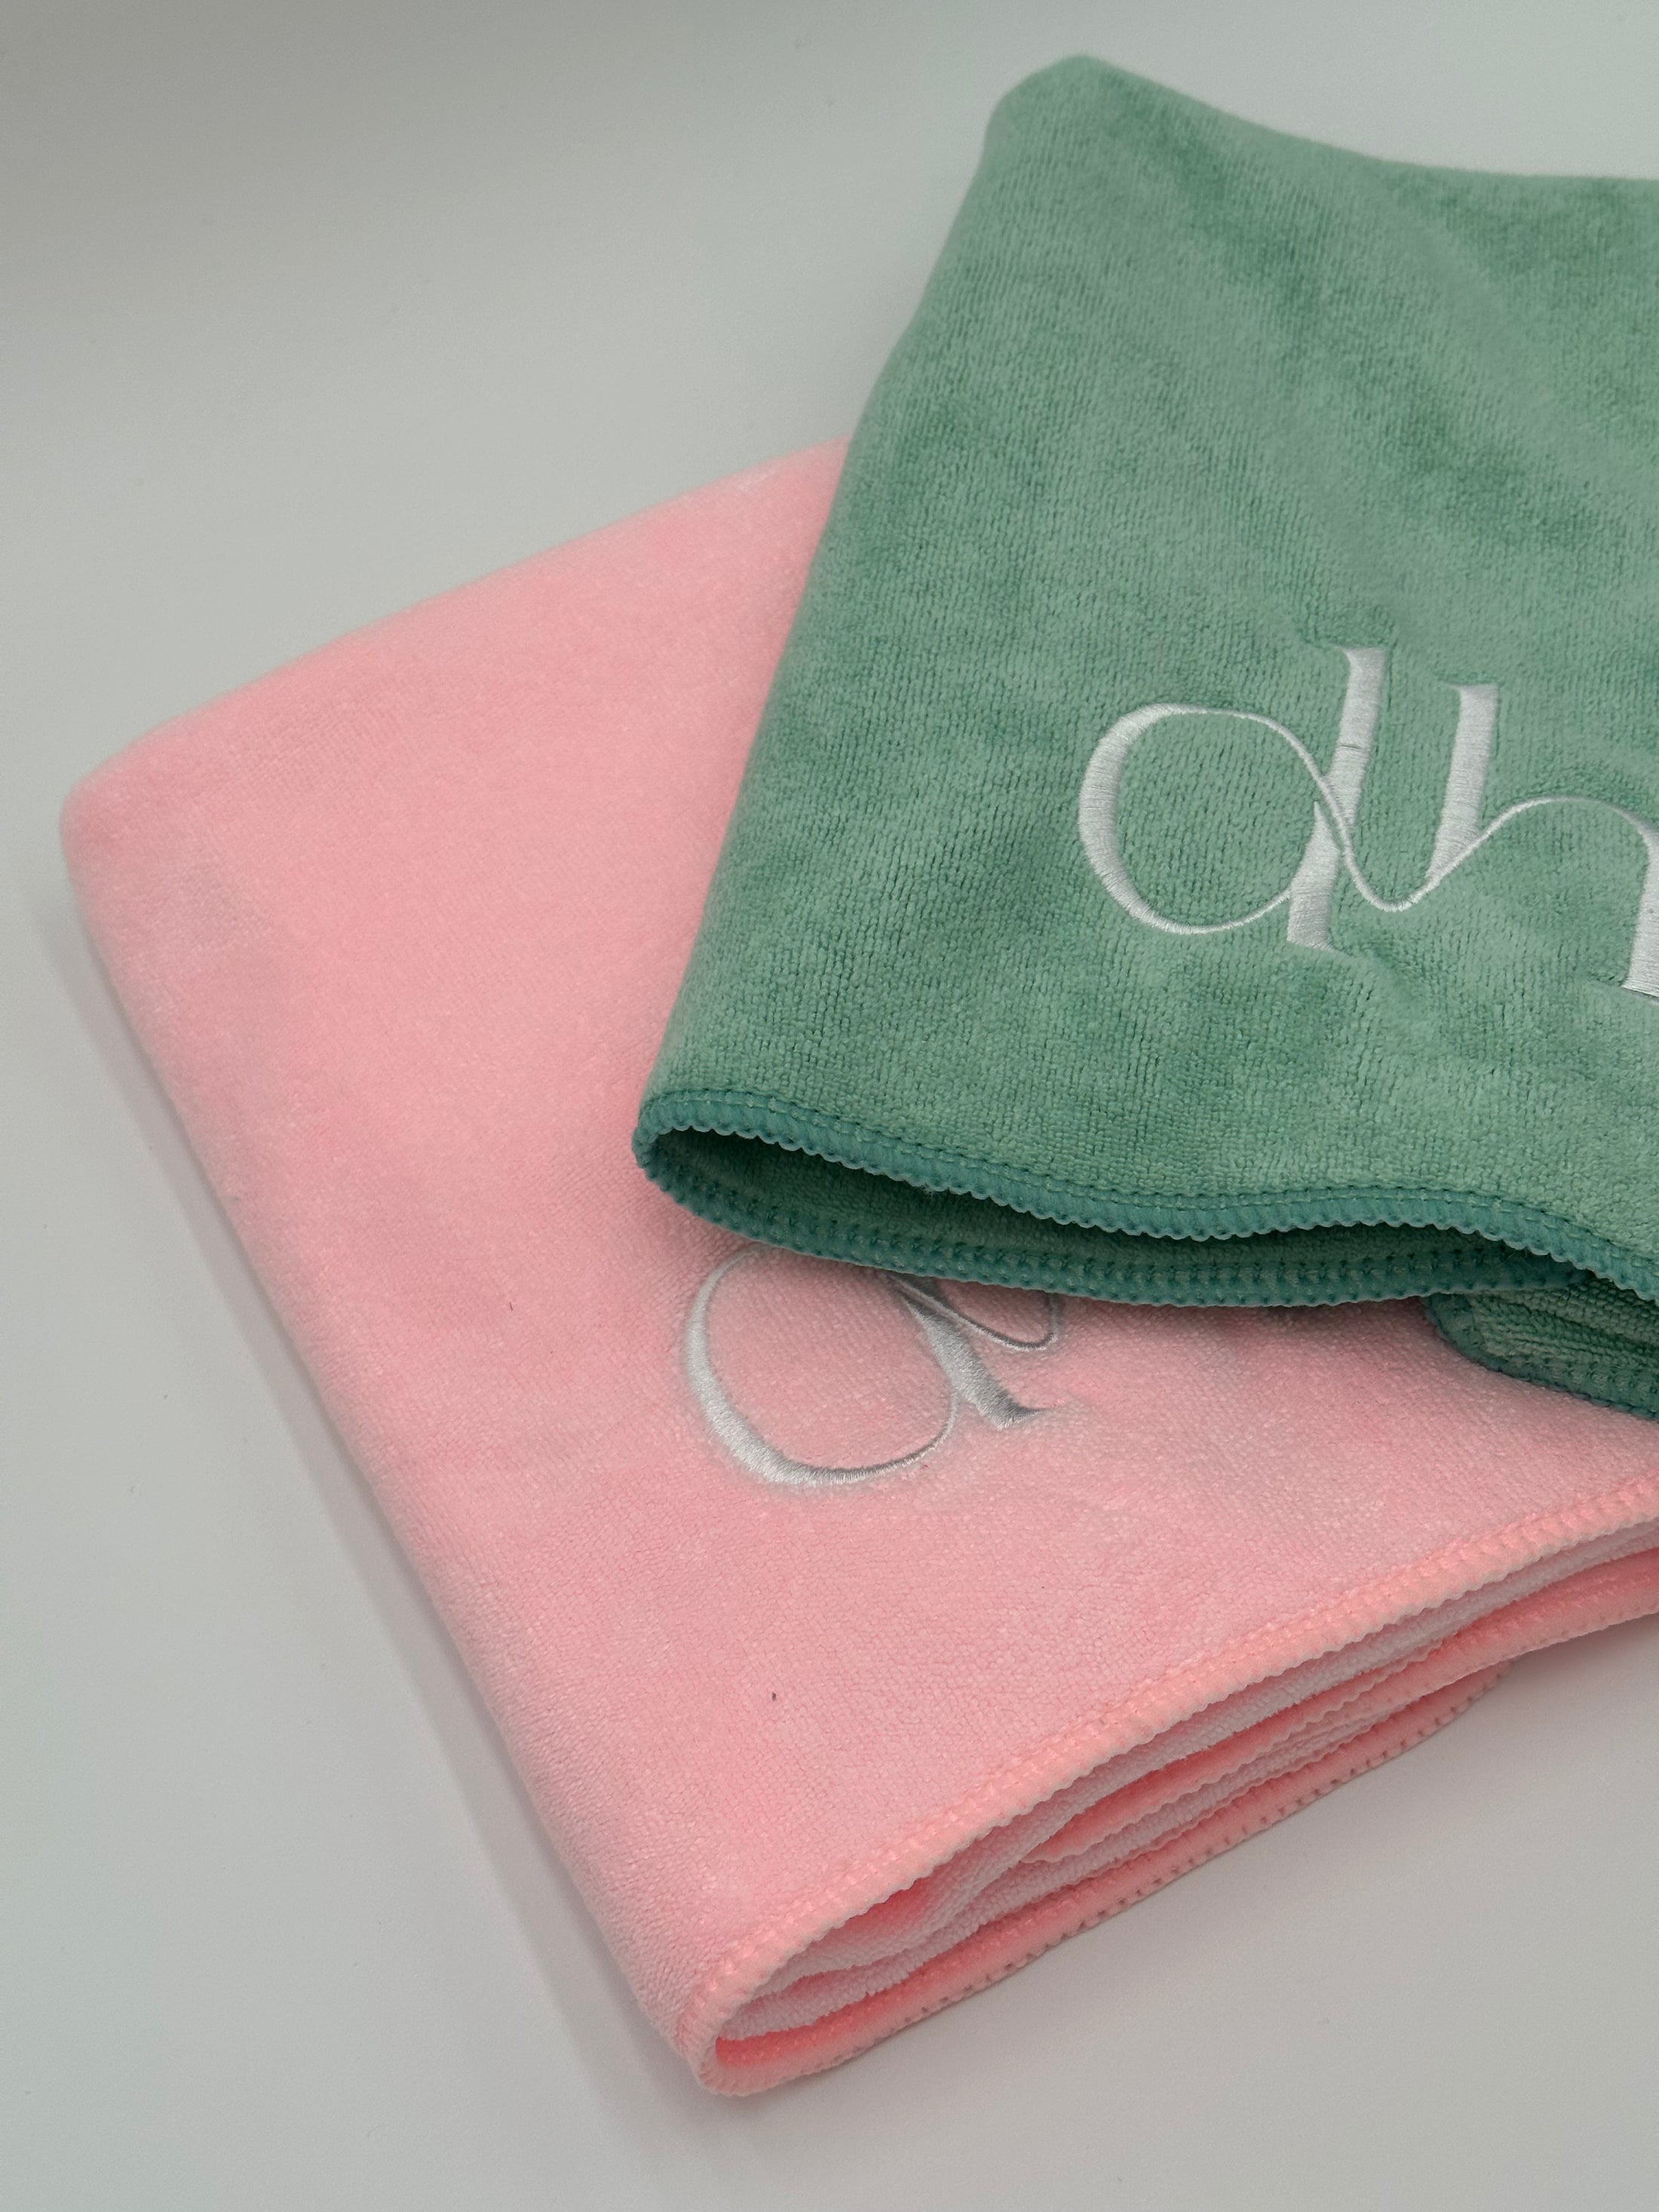 dh Luxury Branded Microfiber Doodle Towel